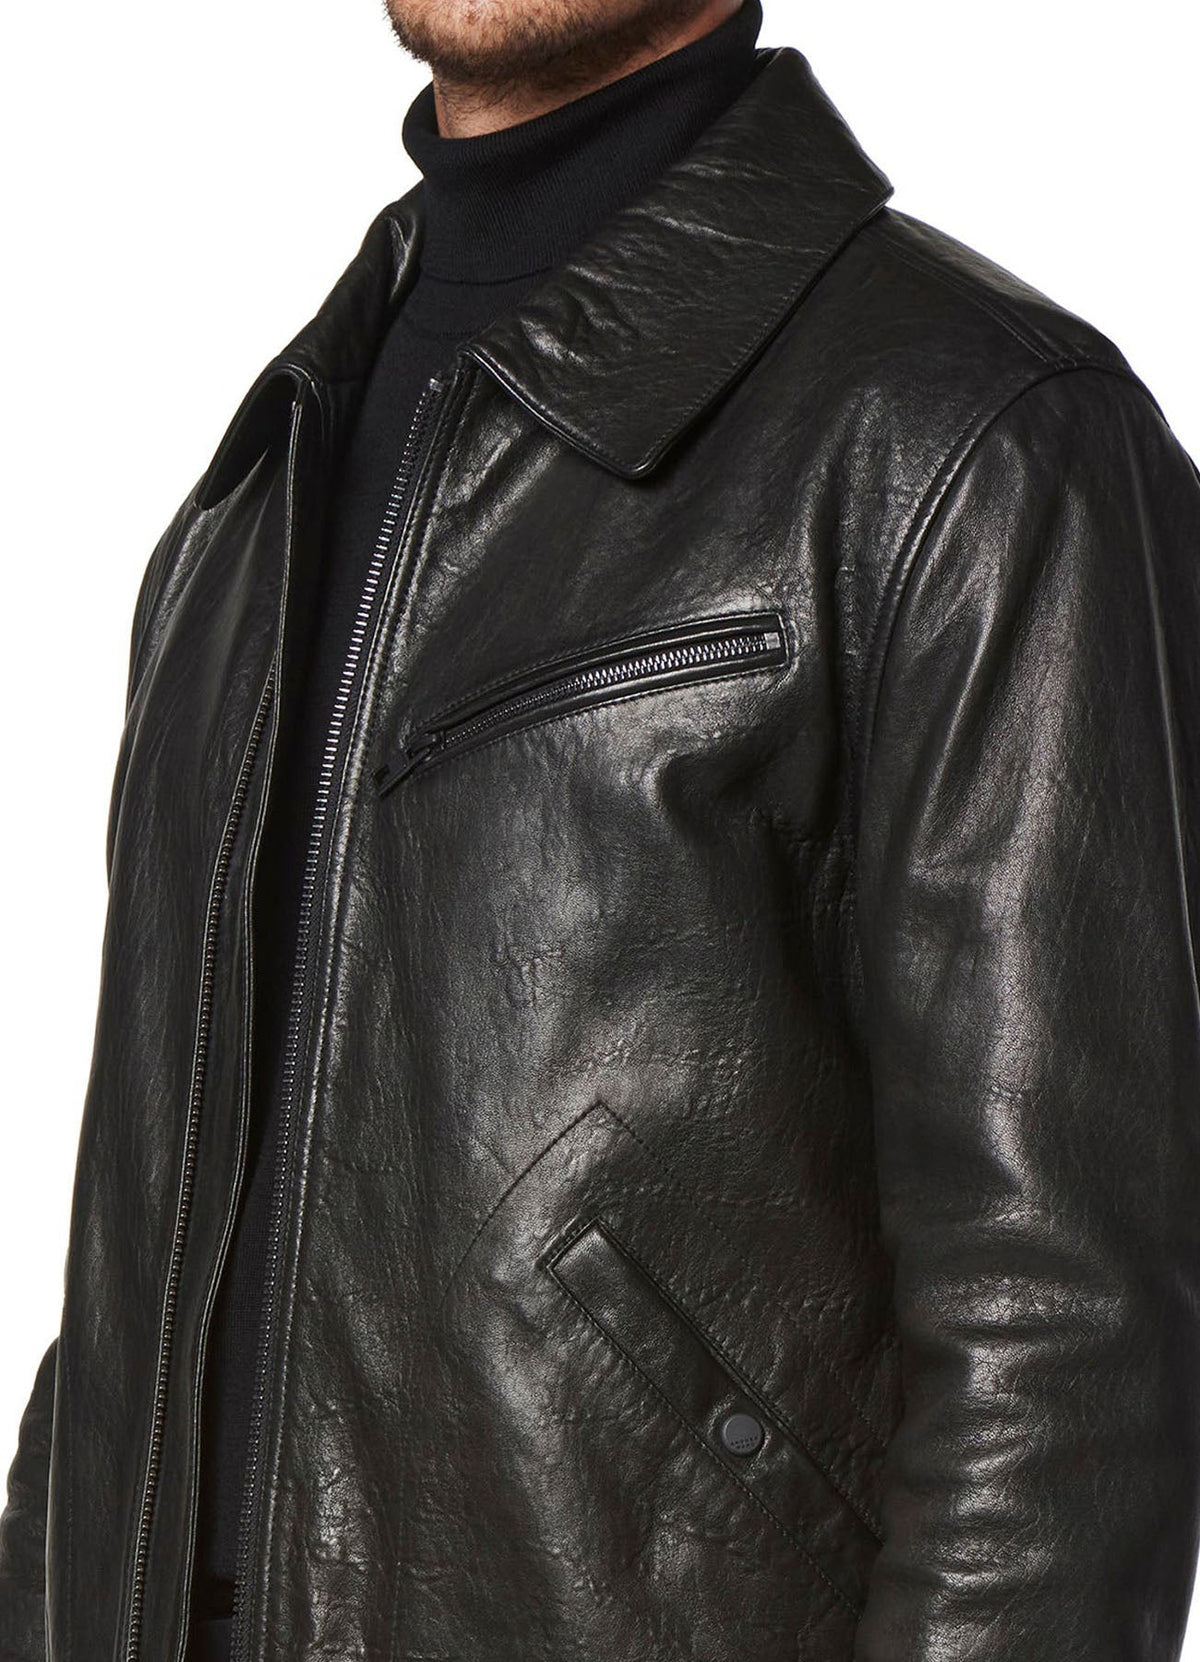 Mens Vintage Black Leather Jacket